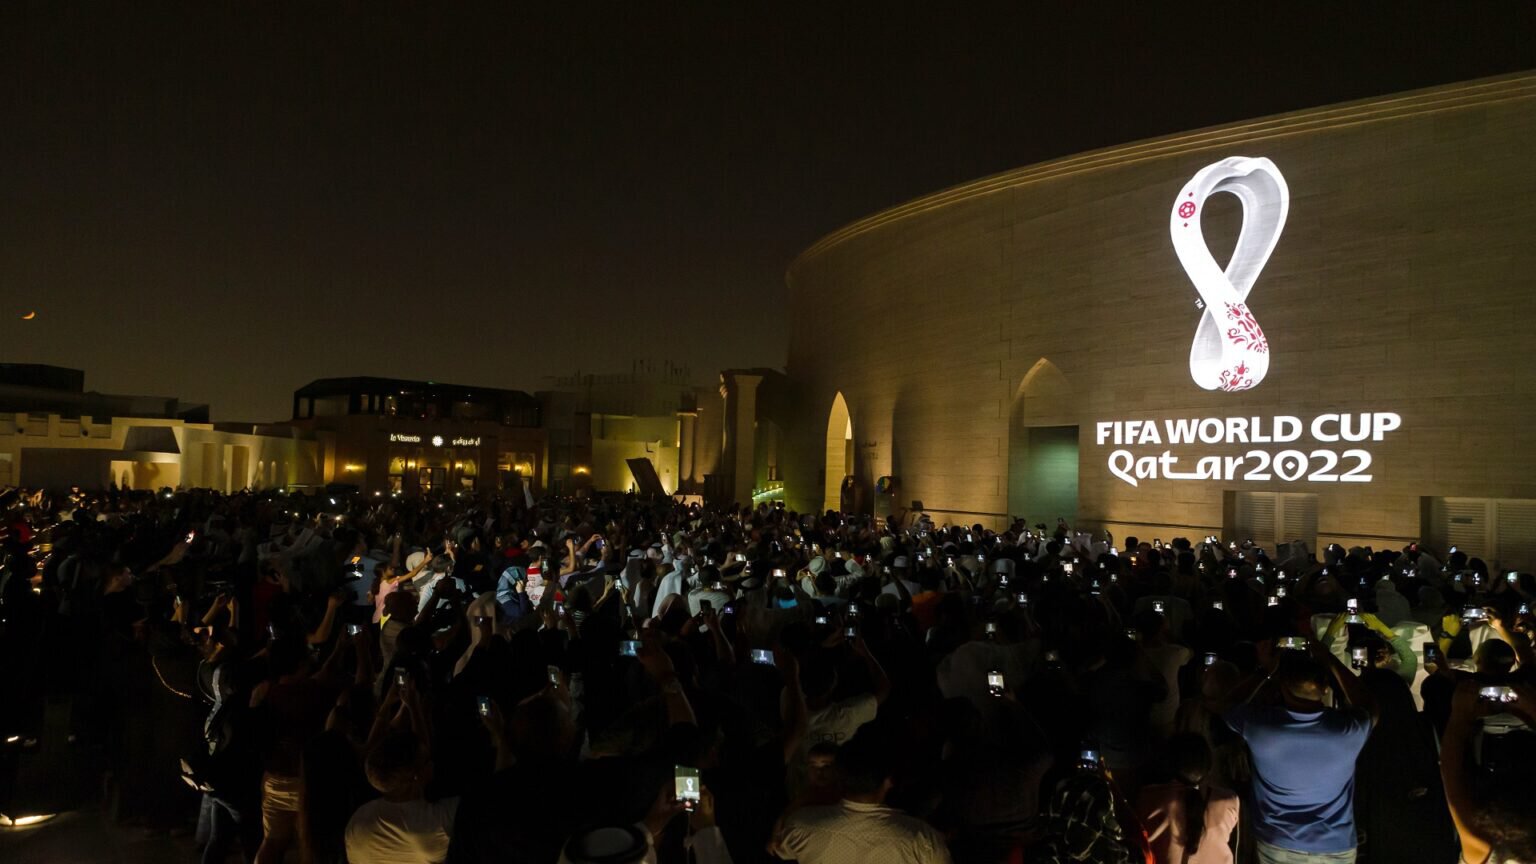 Матчи ЧМ в Катаре посетили 3,4 млн зрителей  на 400 000 больше, чем в 2018 году в России